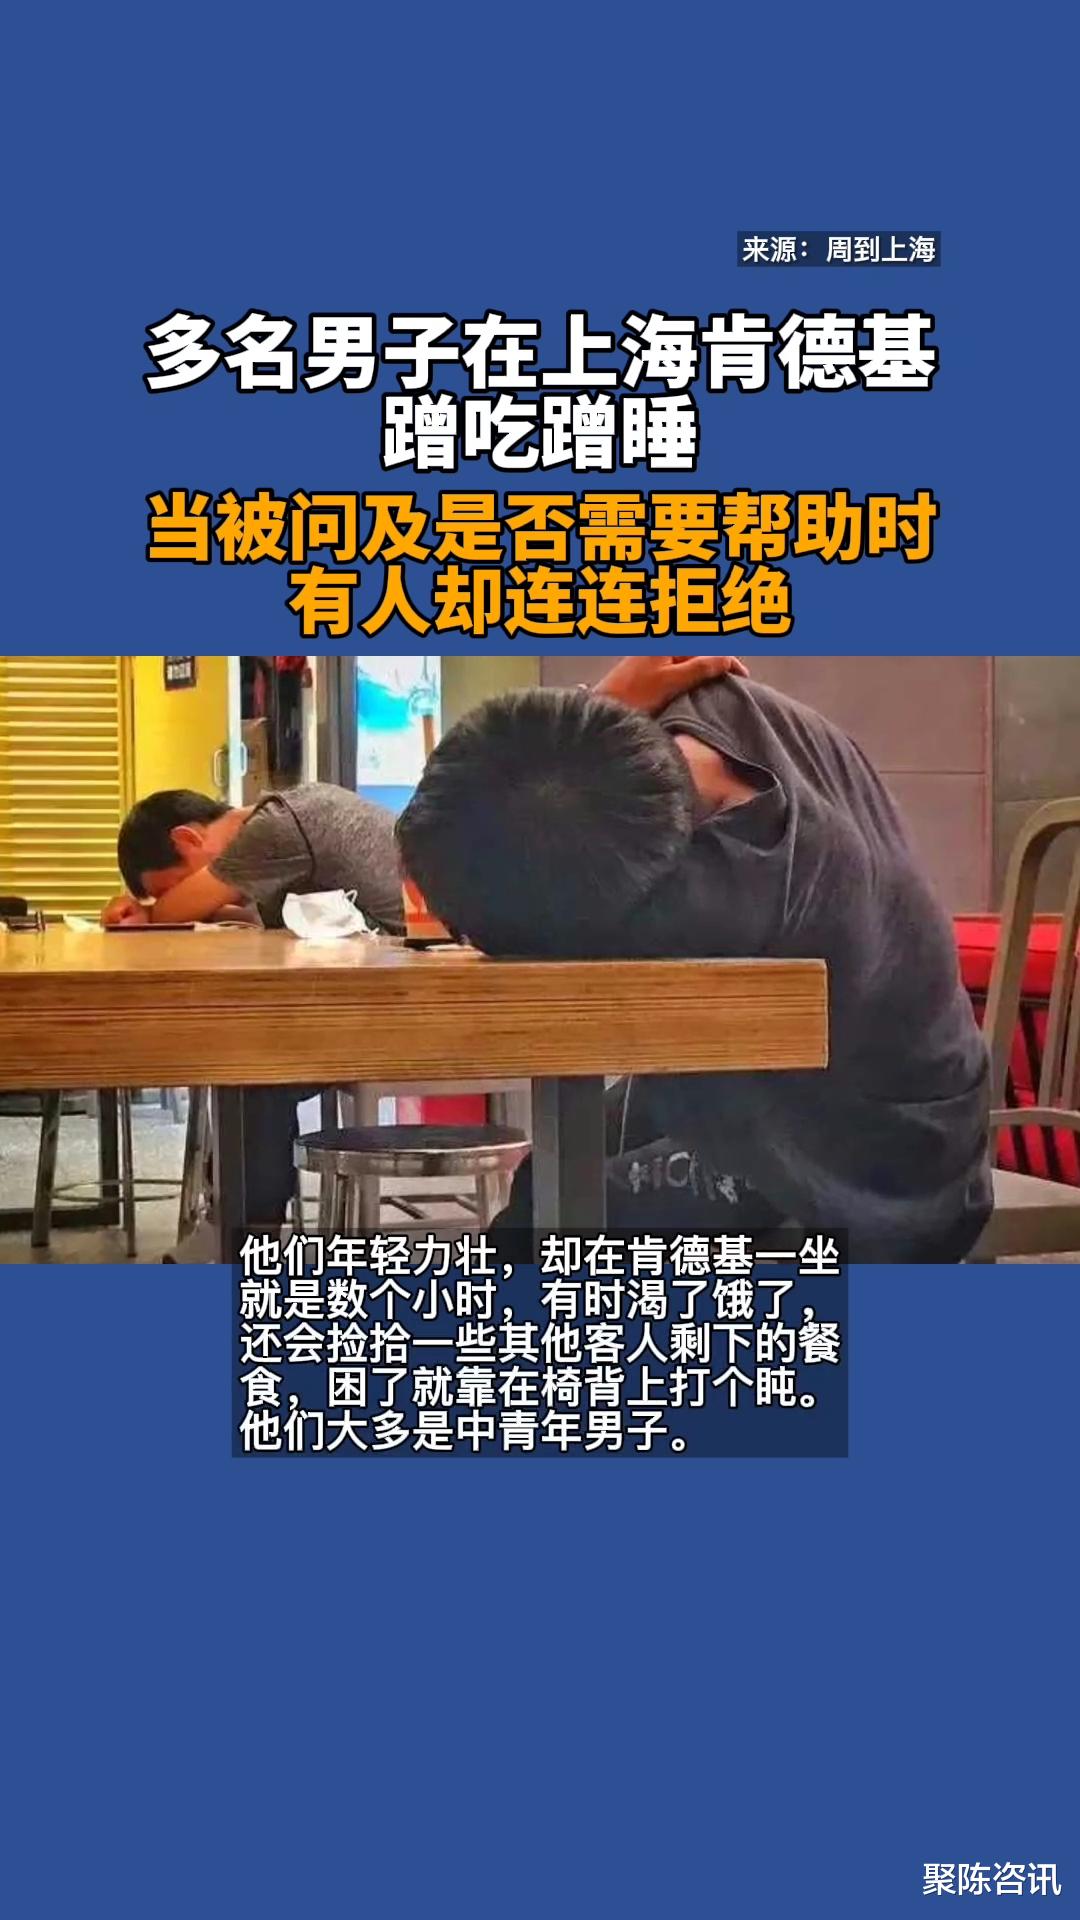 在上海肯德基蹭吃蹭睡，当被问及是否需要帮助时，有人却连连拒绝